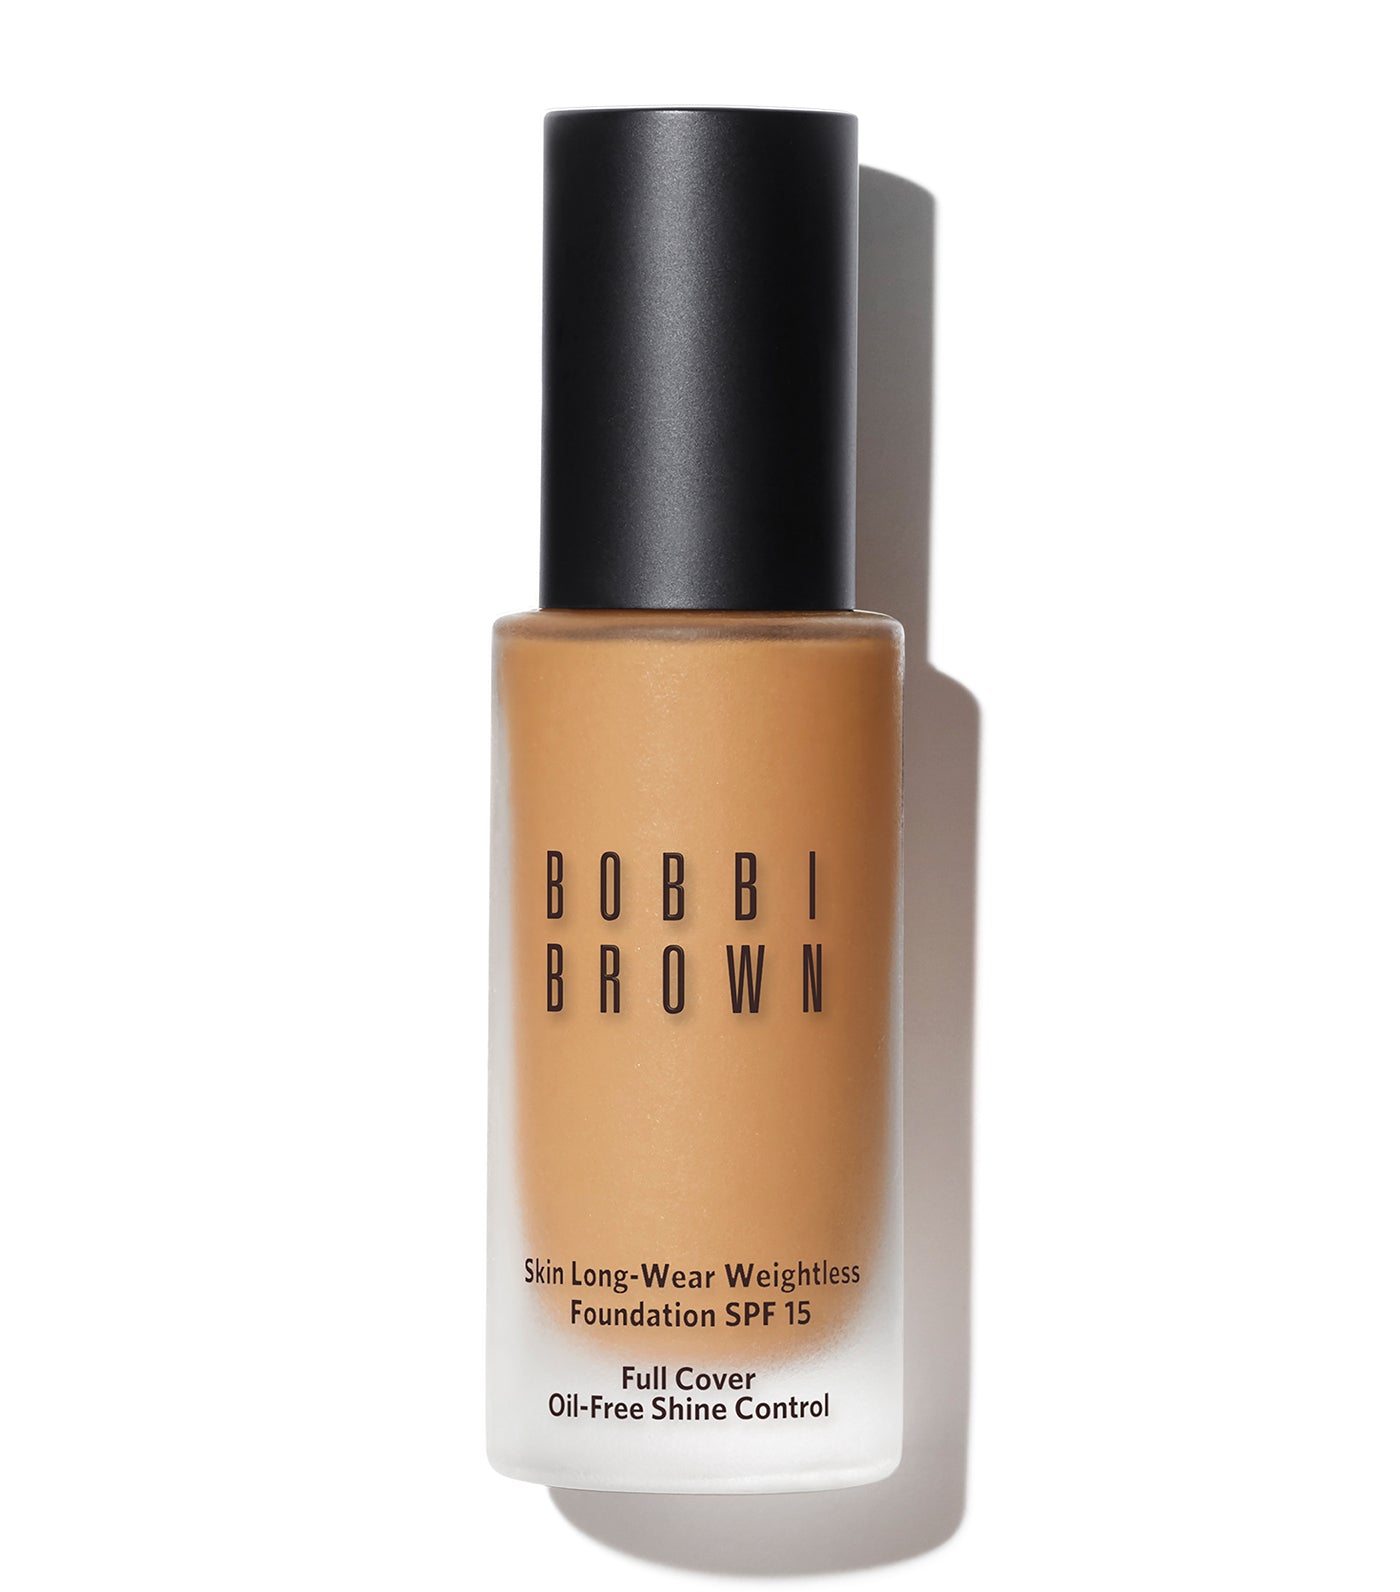 bobbi brown warm beige skin long-wear weightless foundation spf 15